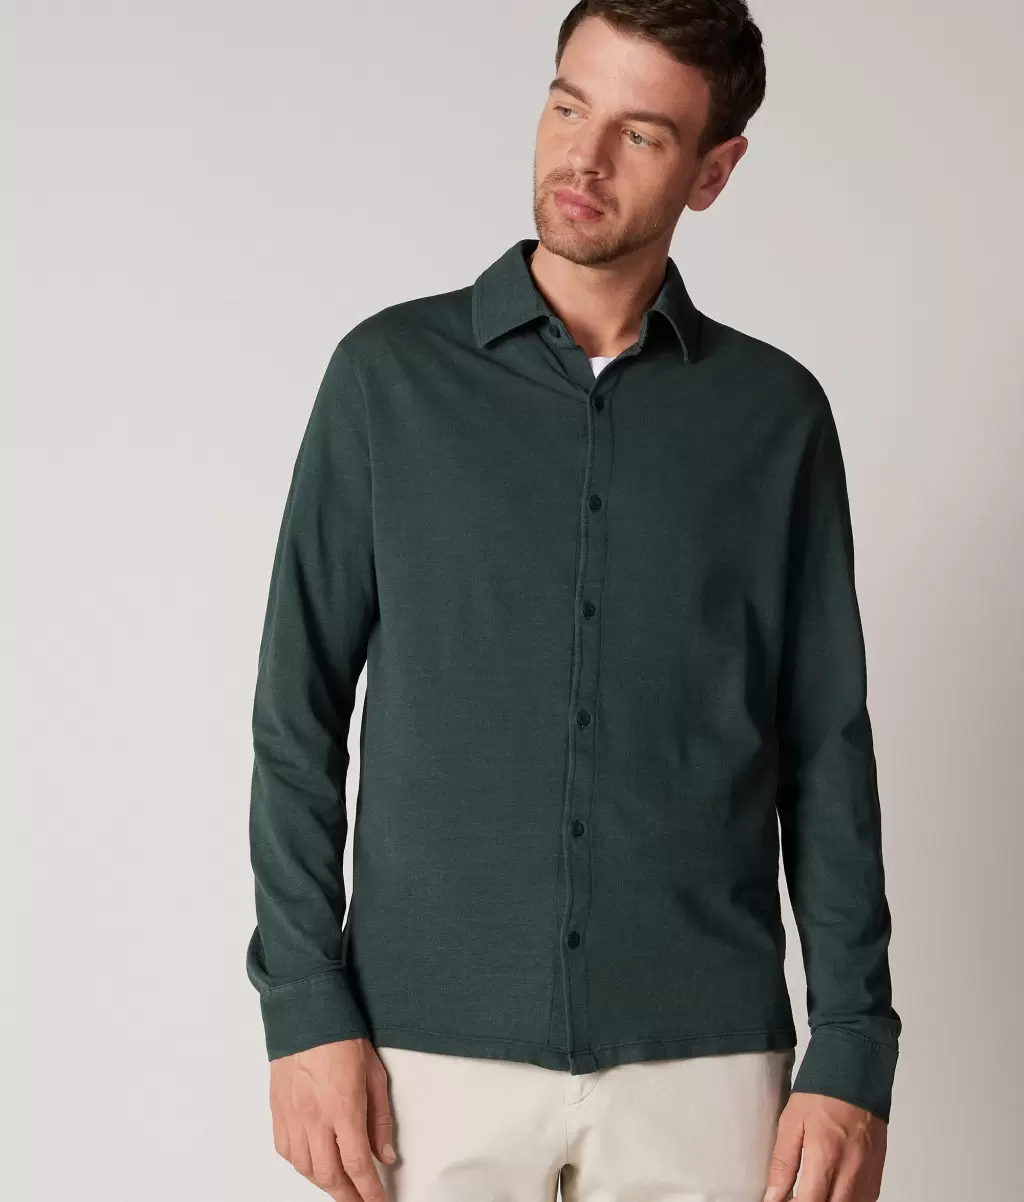 Camisas Dark_Green Homem Falconeri Camisa Em Algodão E Seda Piquet - 1